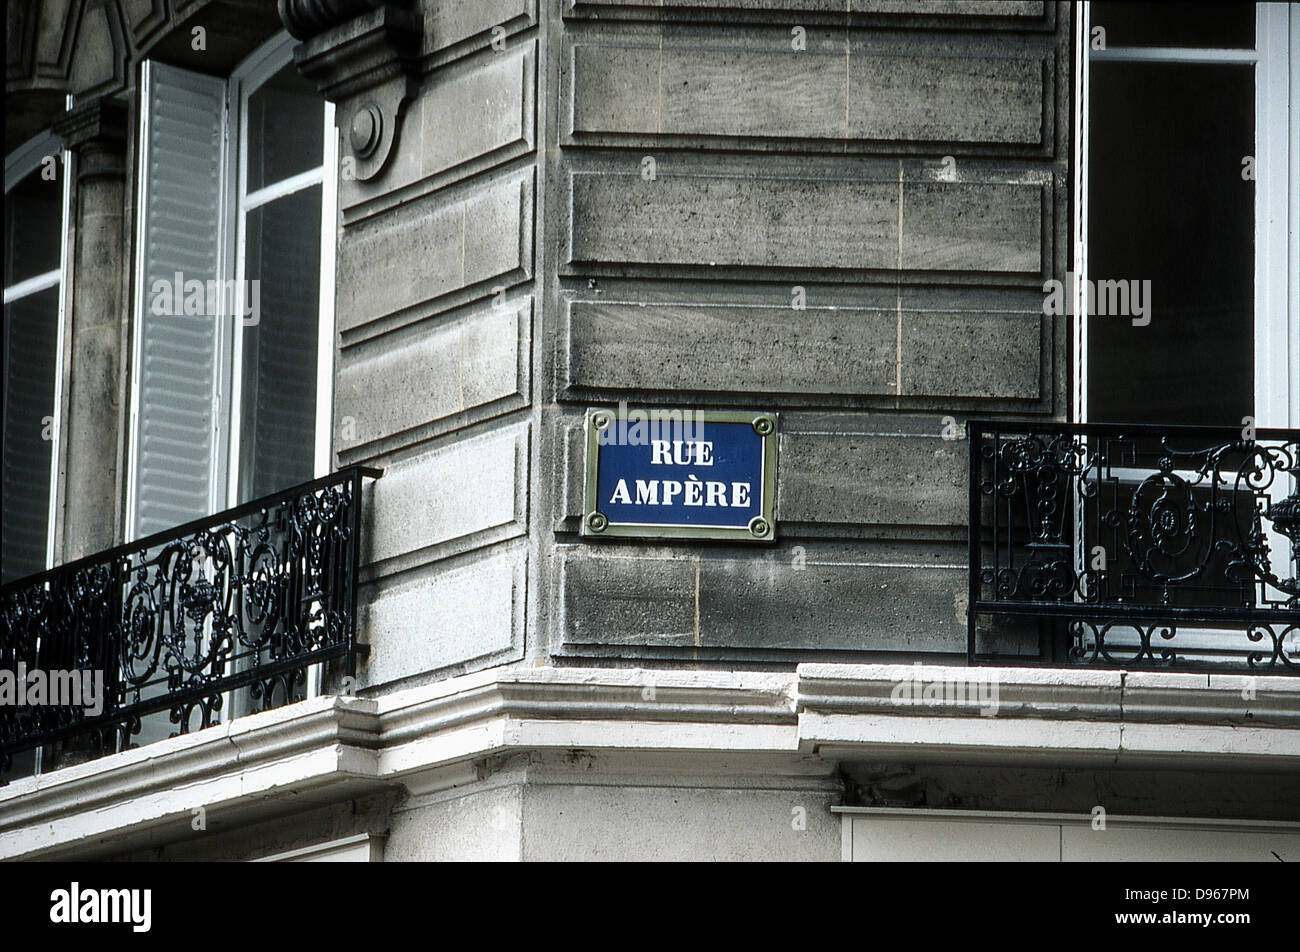 André Marie ampère (1775-1836) mathématicien et physicien français : de l'électrodynamique. Plaque de rue de Paris porte son nom. Banque D'Images